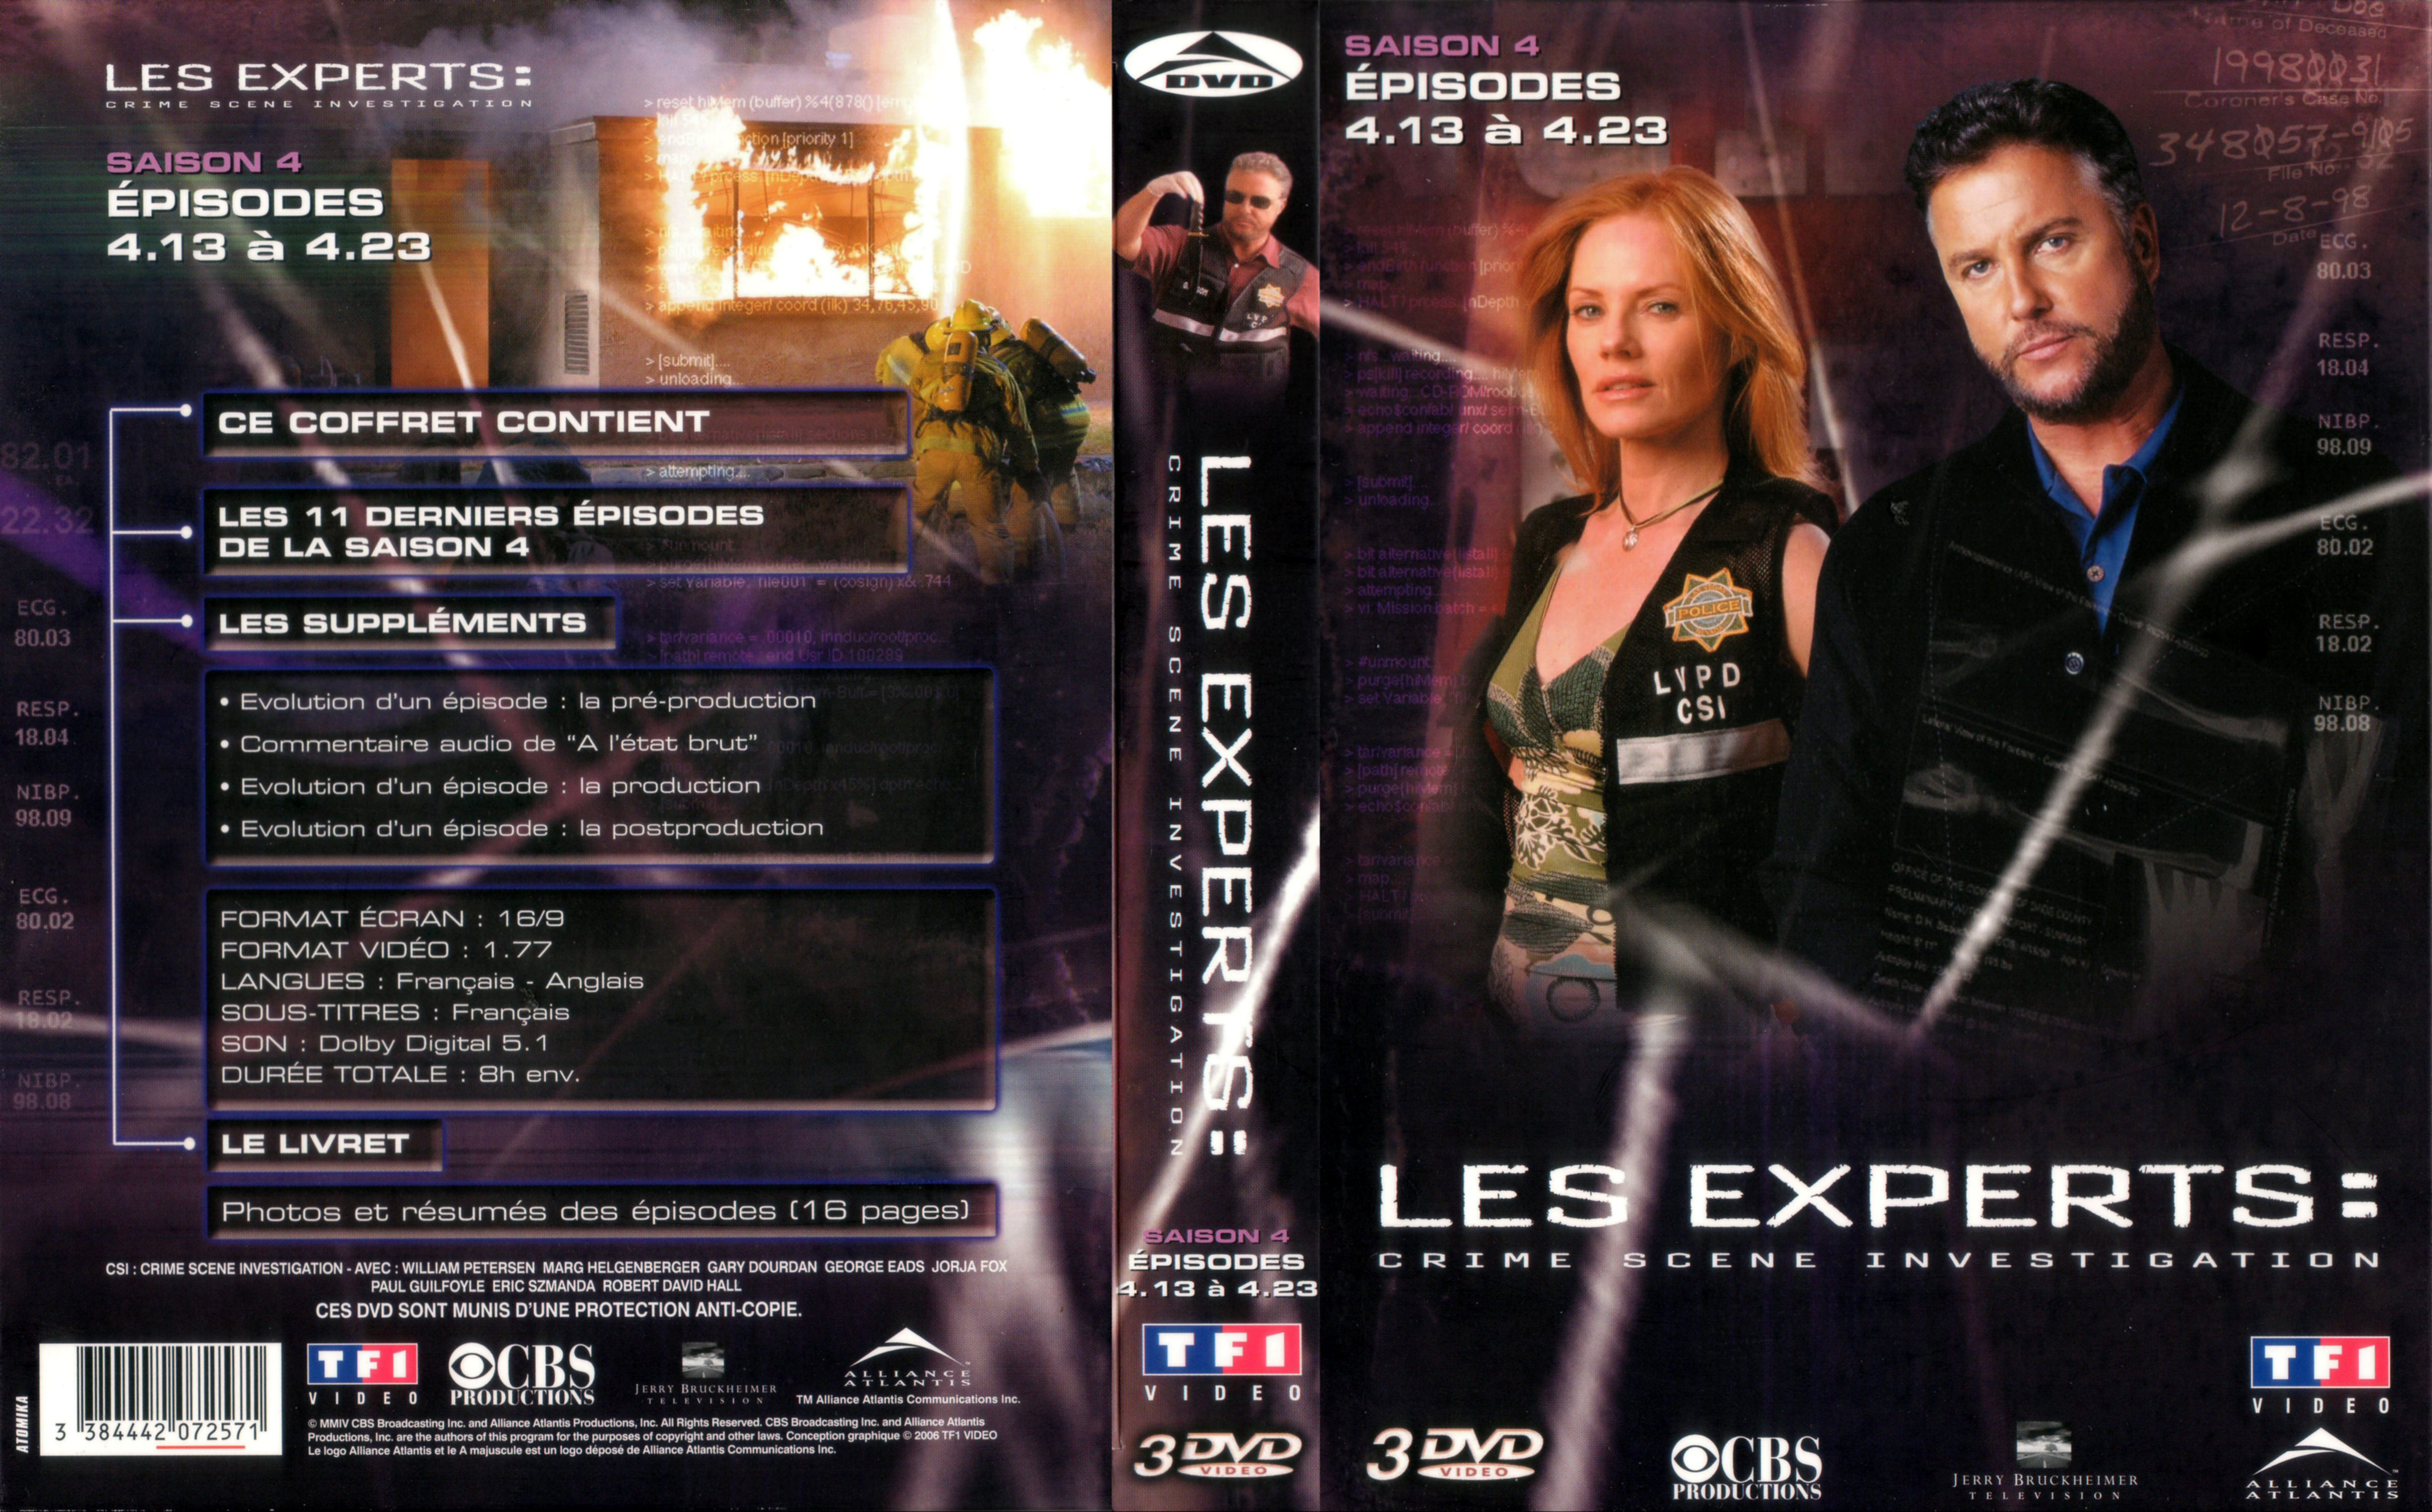 Jaquette DVD Les experts saison 4 vol 02 COFFRET